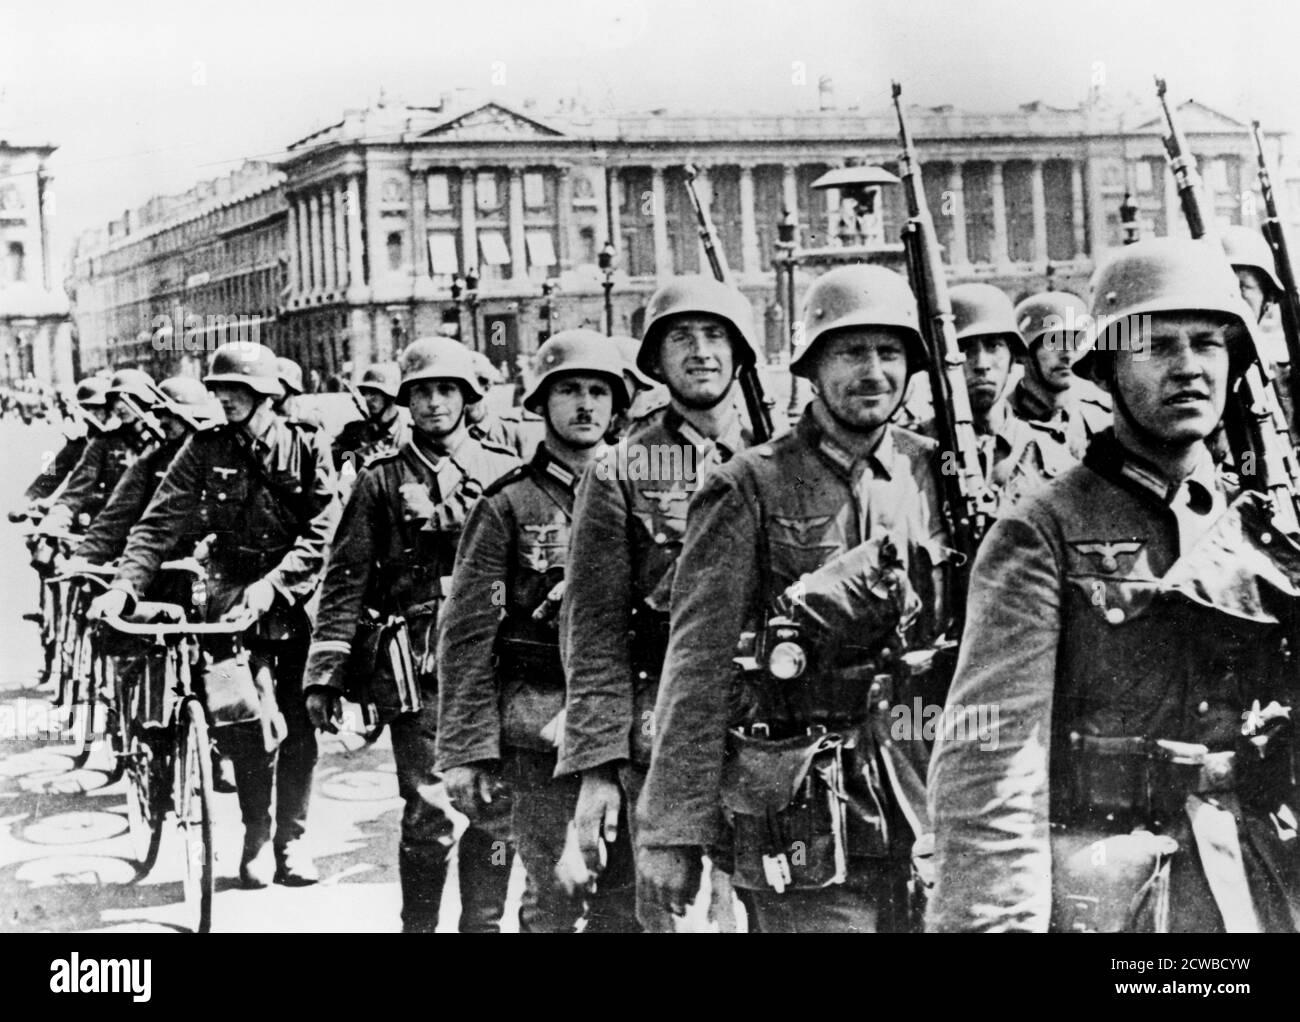 Deutsche Truppen marschieren durch Paris, 17. Juni 1940. Am 10. Juni verließ die französische Regierung Paris und erklärte es zu einer offenen Stadt, und die ersten deutschen Truppen kamen vier Tage später an. Der Fotograf ist unbekannt. Stockfoto